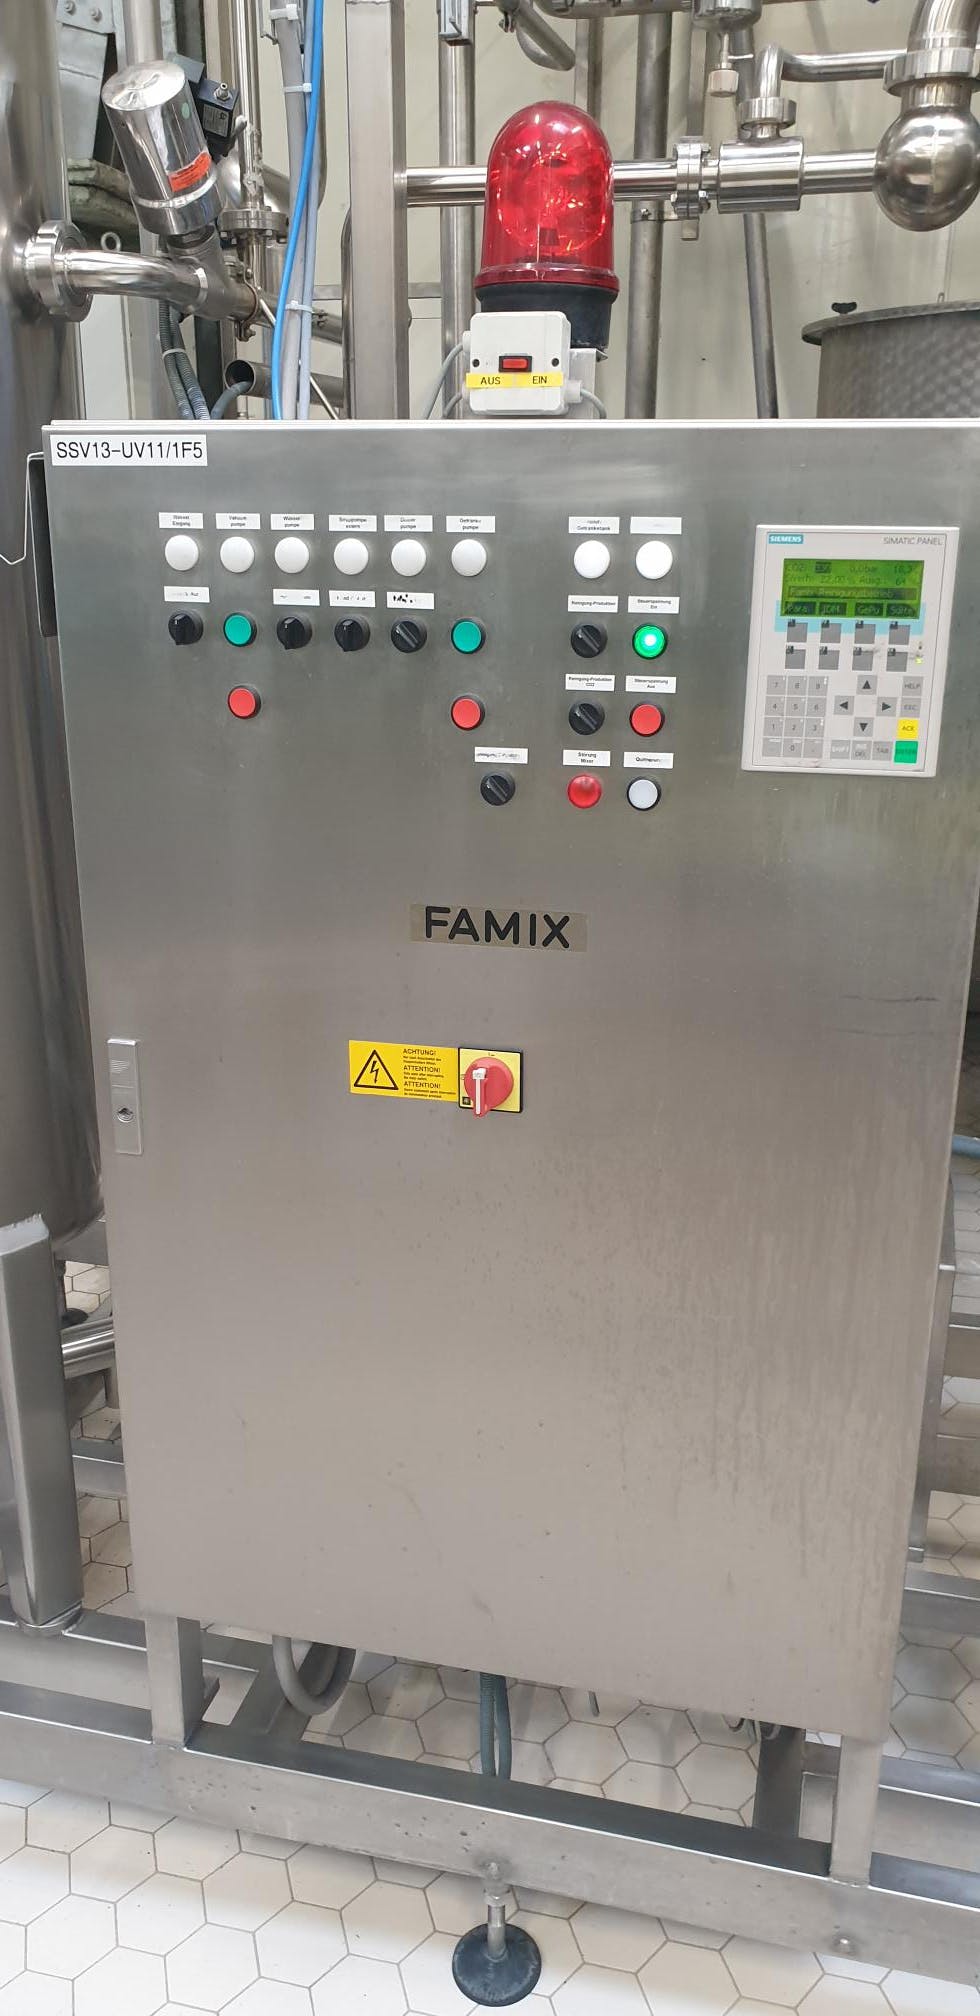 Control unit of FAMIX FAMIX 15000